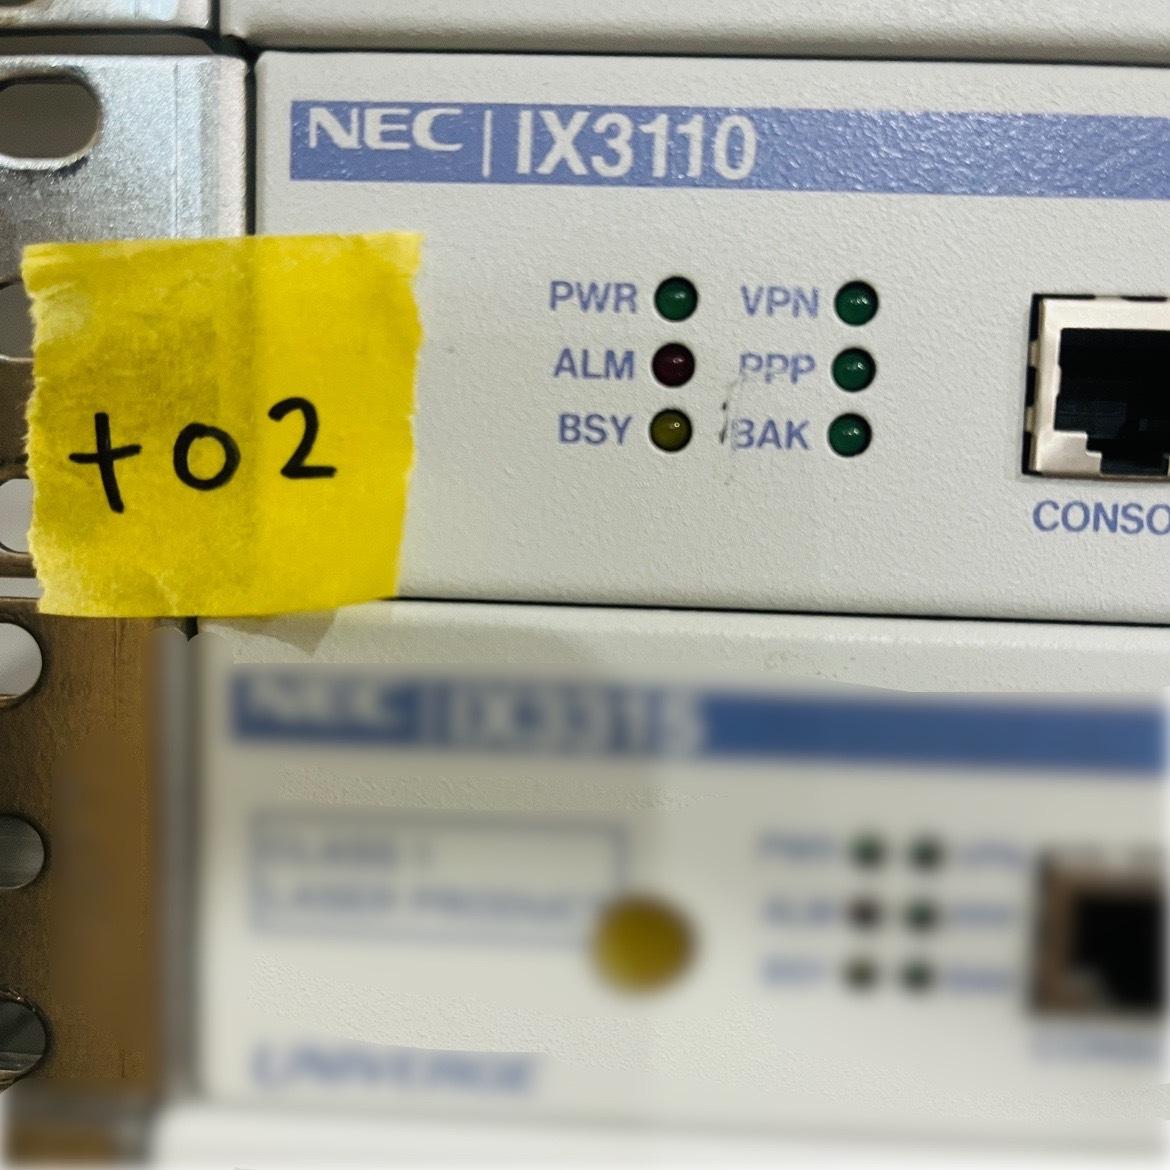 ＋02【通電OK】NEC IX3110 UNIVERGE ルーター ギガビット イーサネット 光回線 メタル接続 光接続 VPN PPP BAK エヌイーシー_画像2